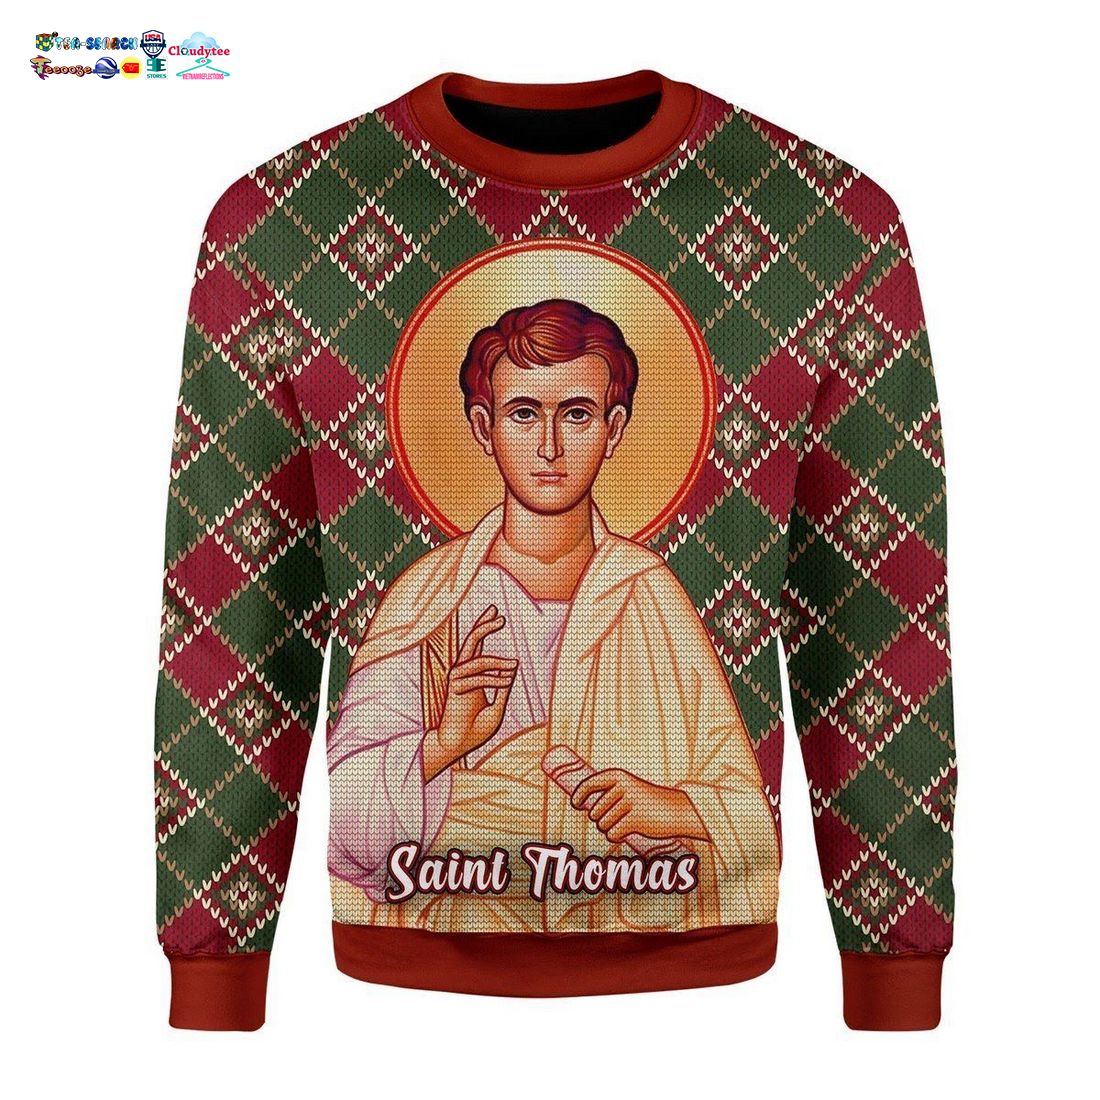 Saint Thomas Ugly Christmas Sweater